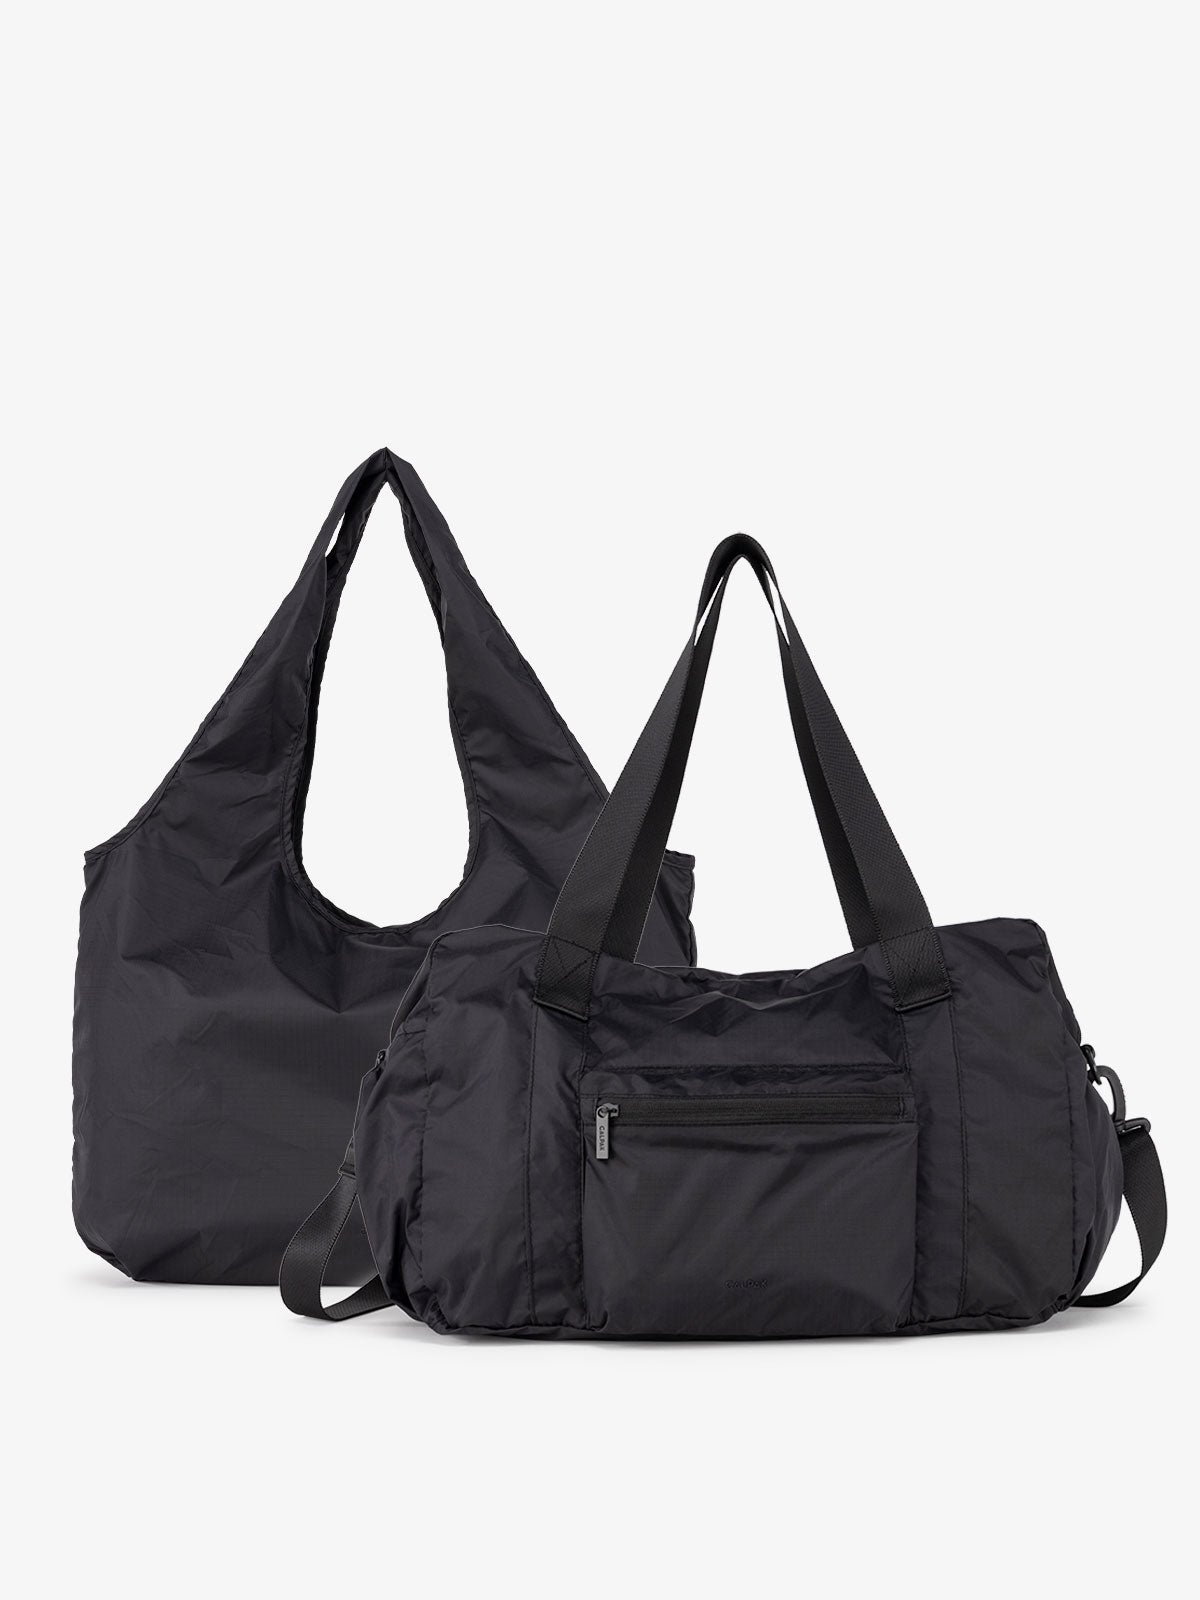 CALPAK Compakt Duo with tote bag and duffel bag in black